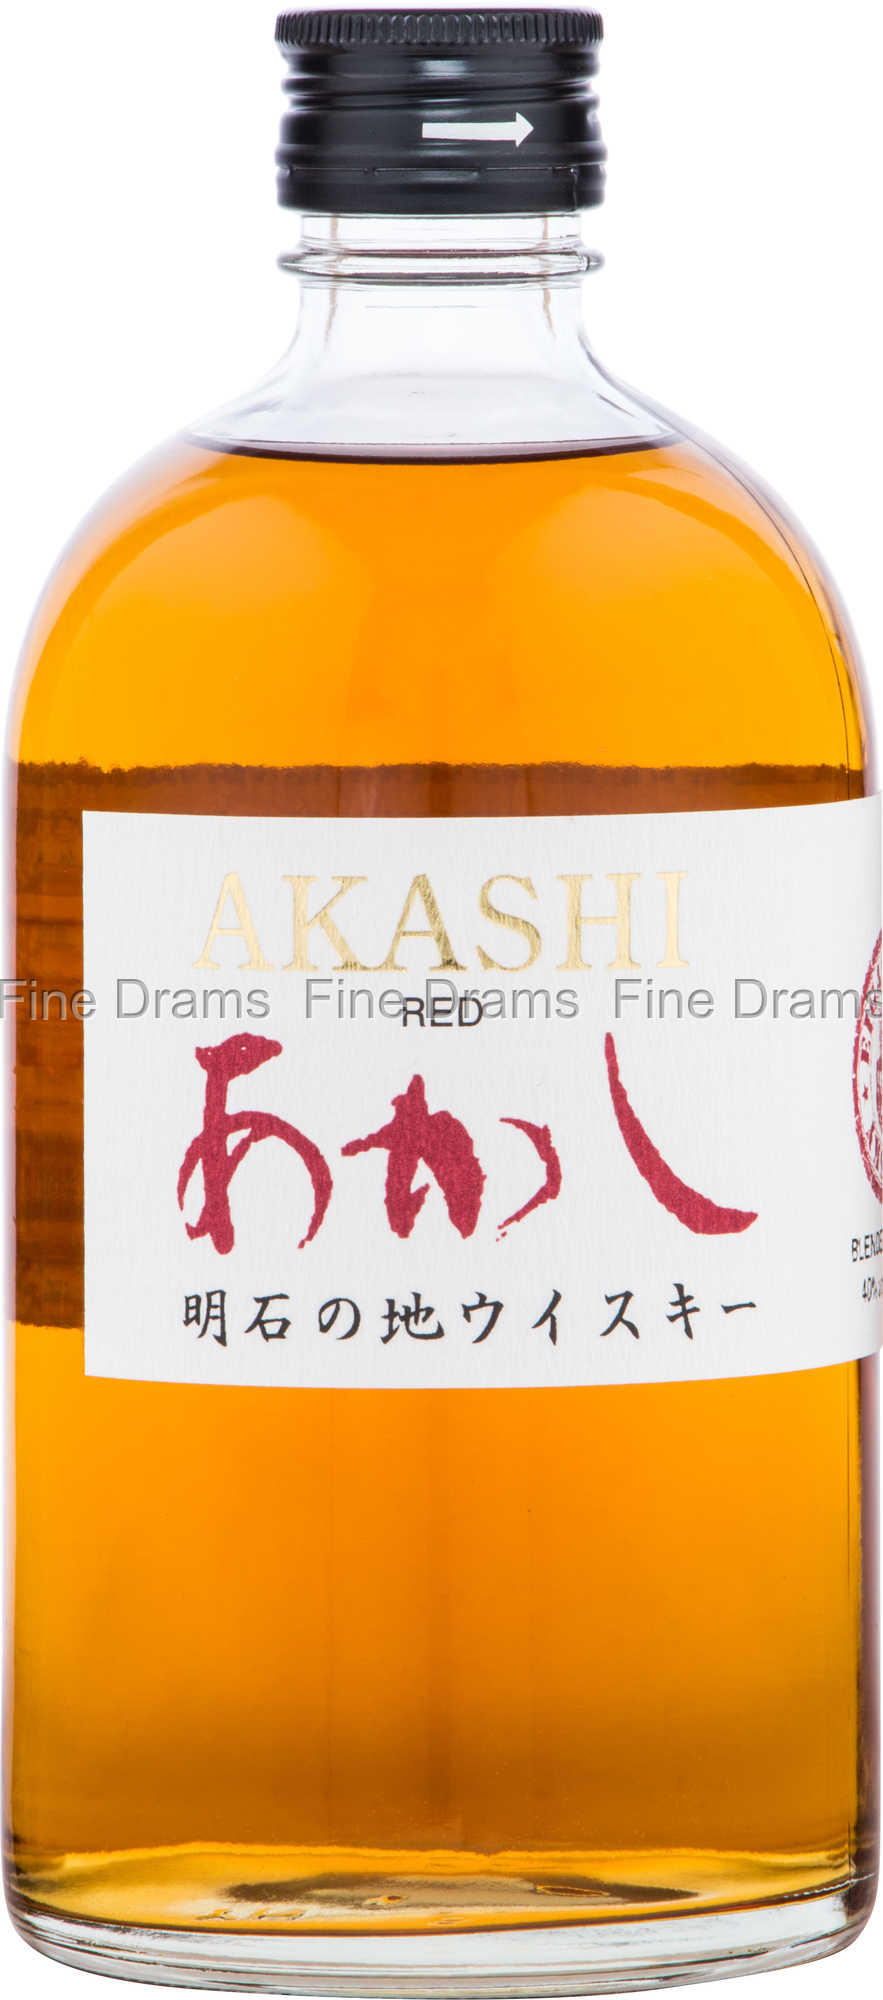 Whisky japonnais Akashi Meïsei 40% - White Oak Distillery